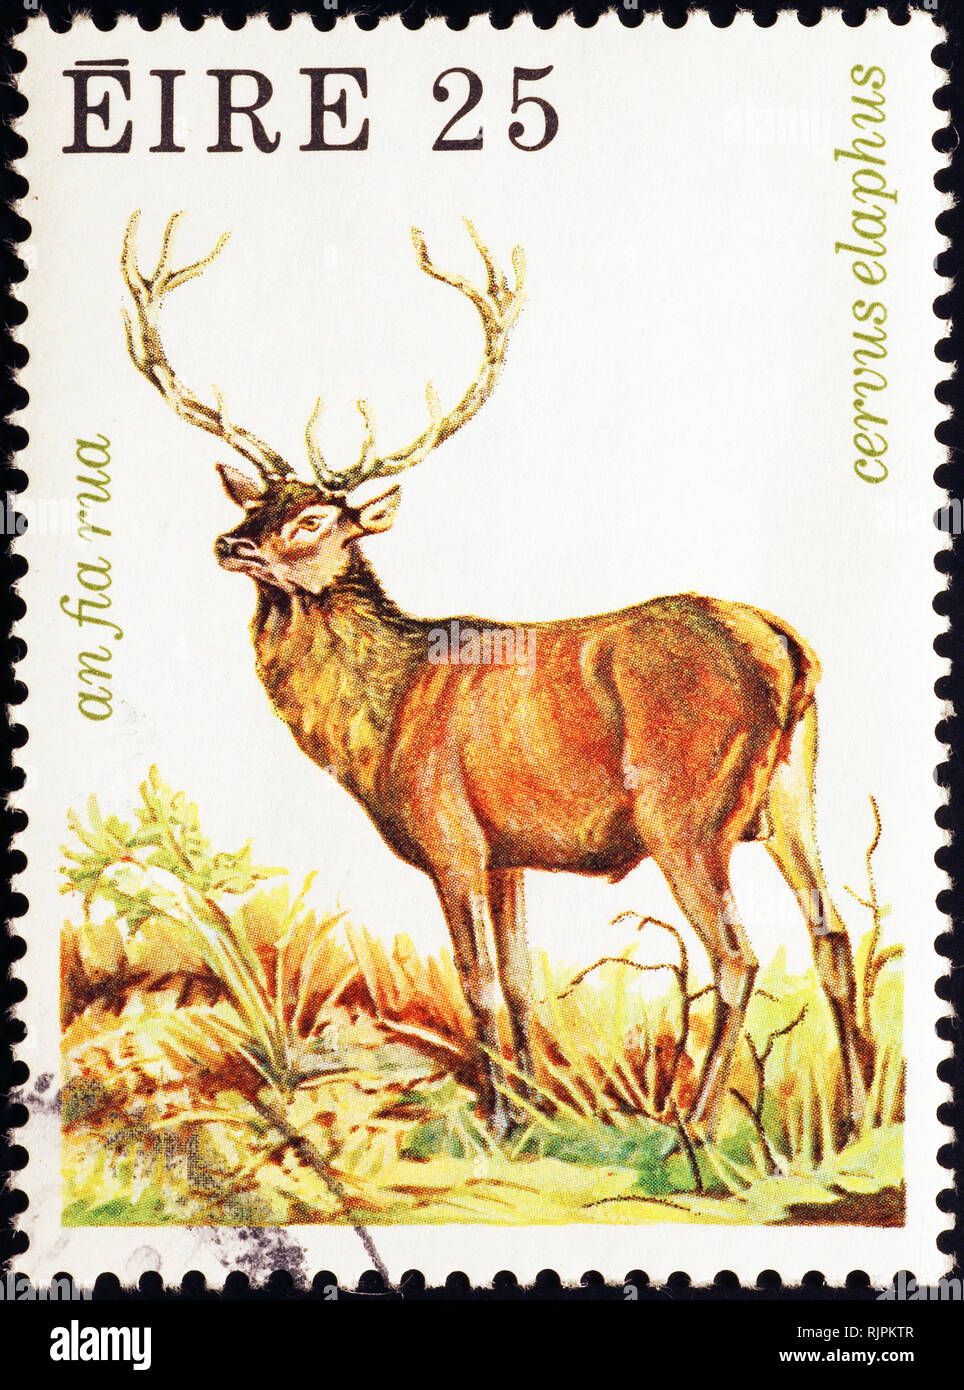 Stag sur timbre irlandais Banque D'Images